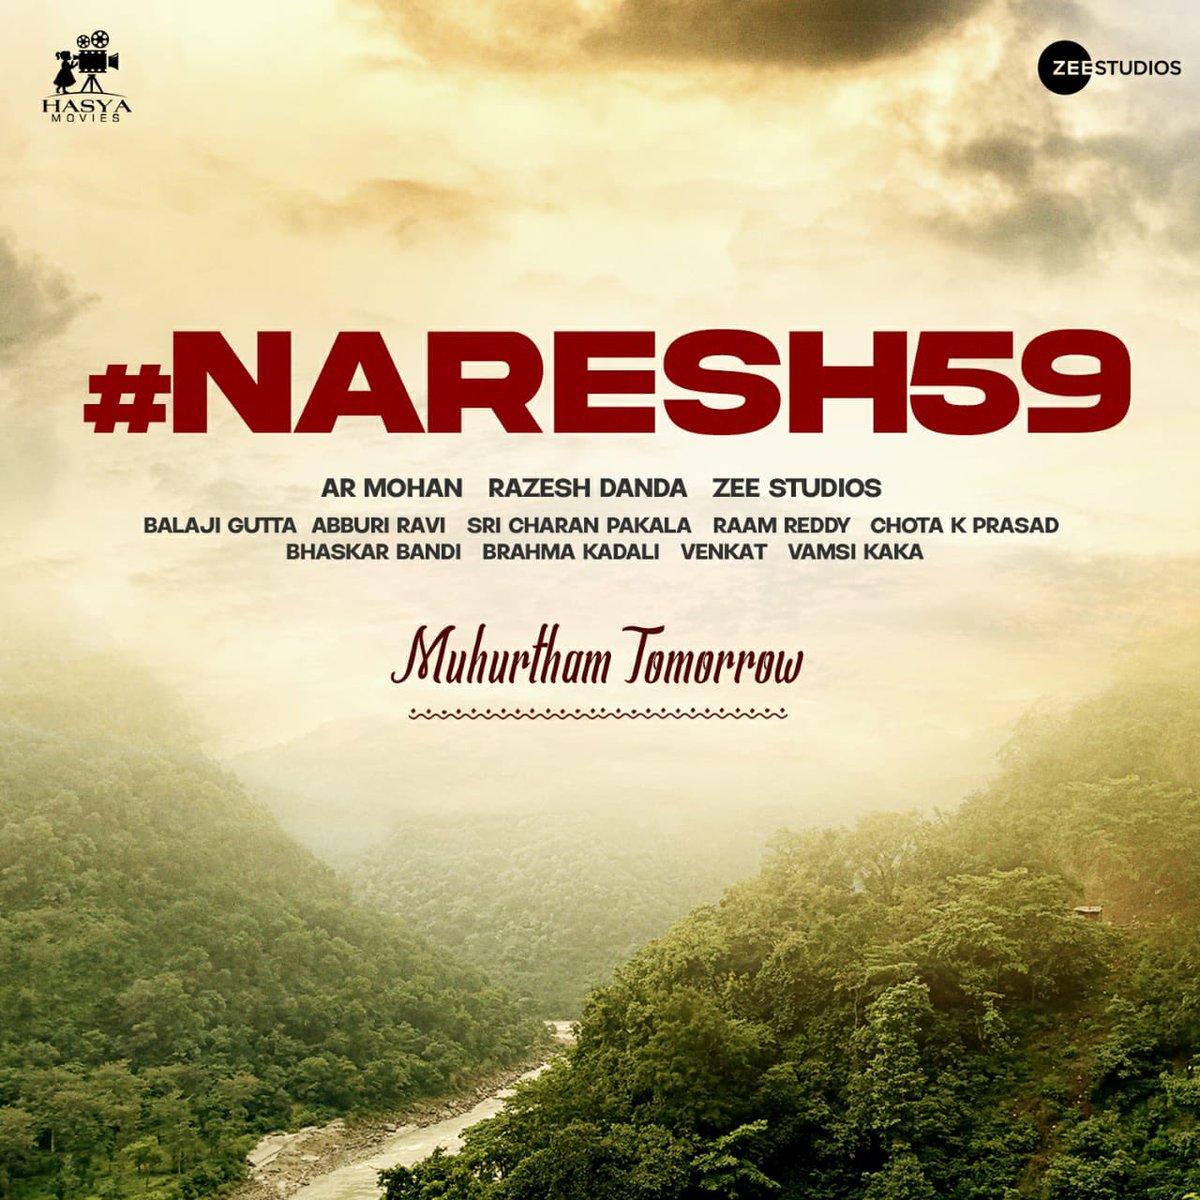 #Naresh59 🤙🏻🤙🏻🤙🏻 !